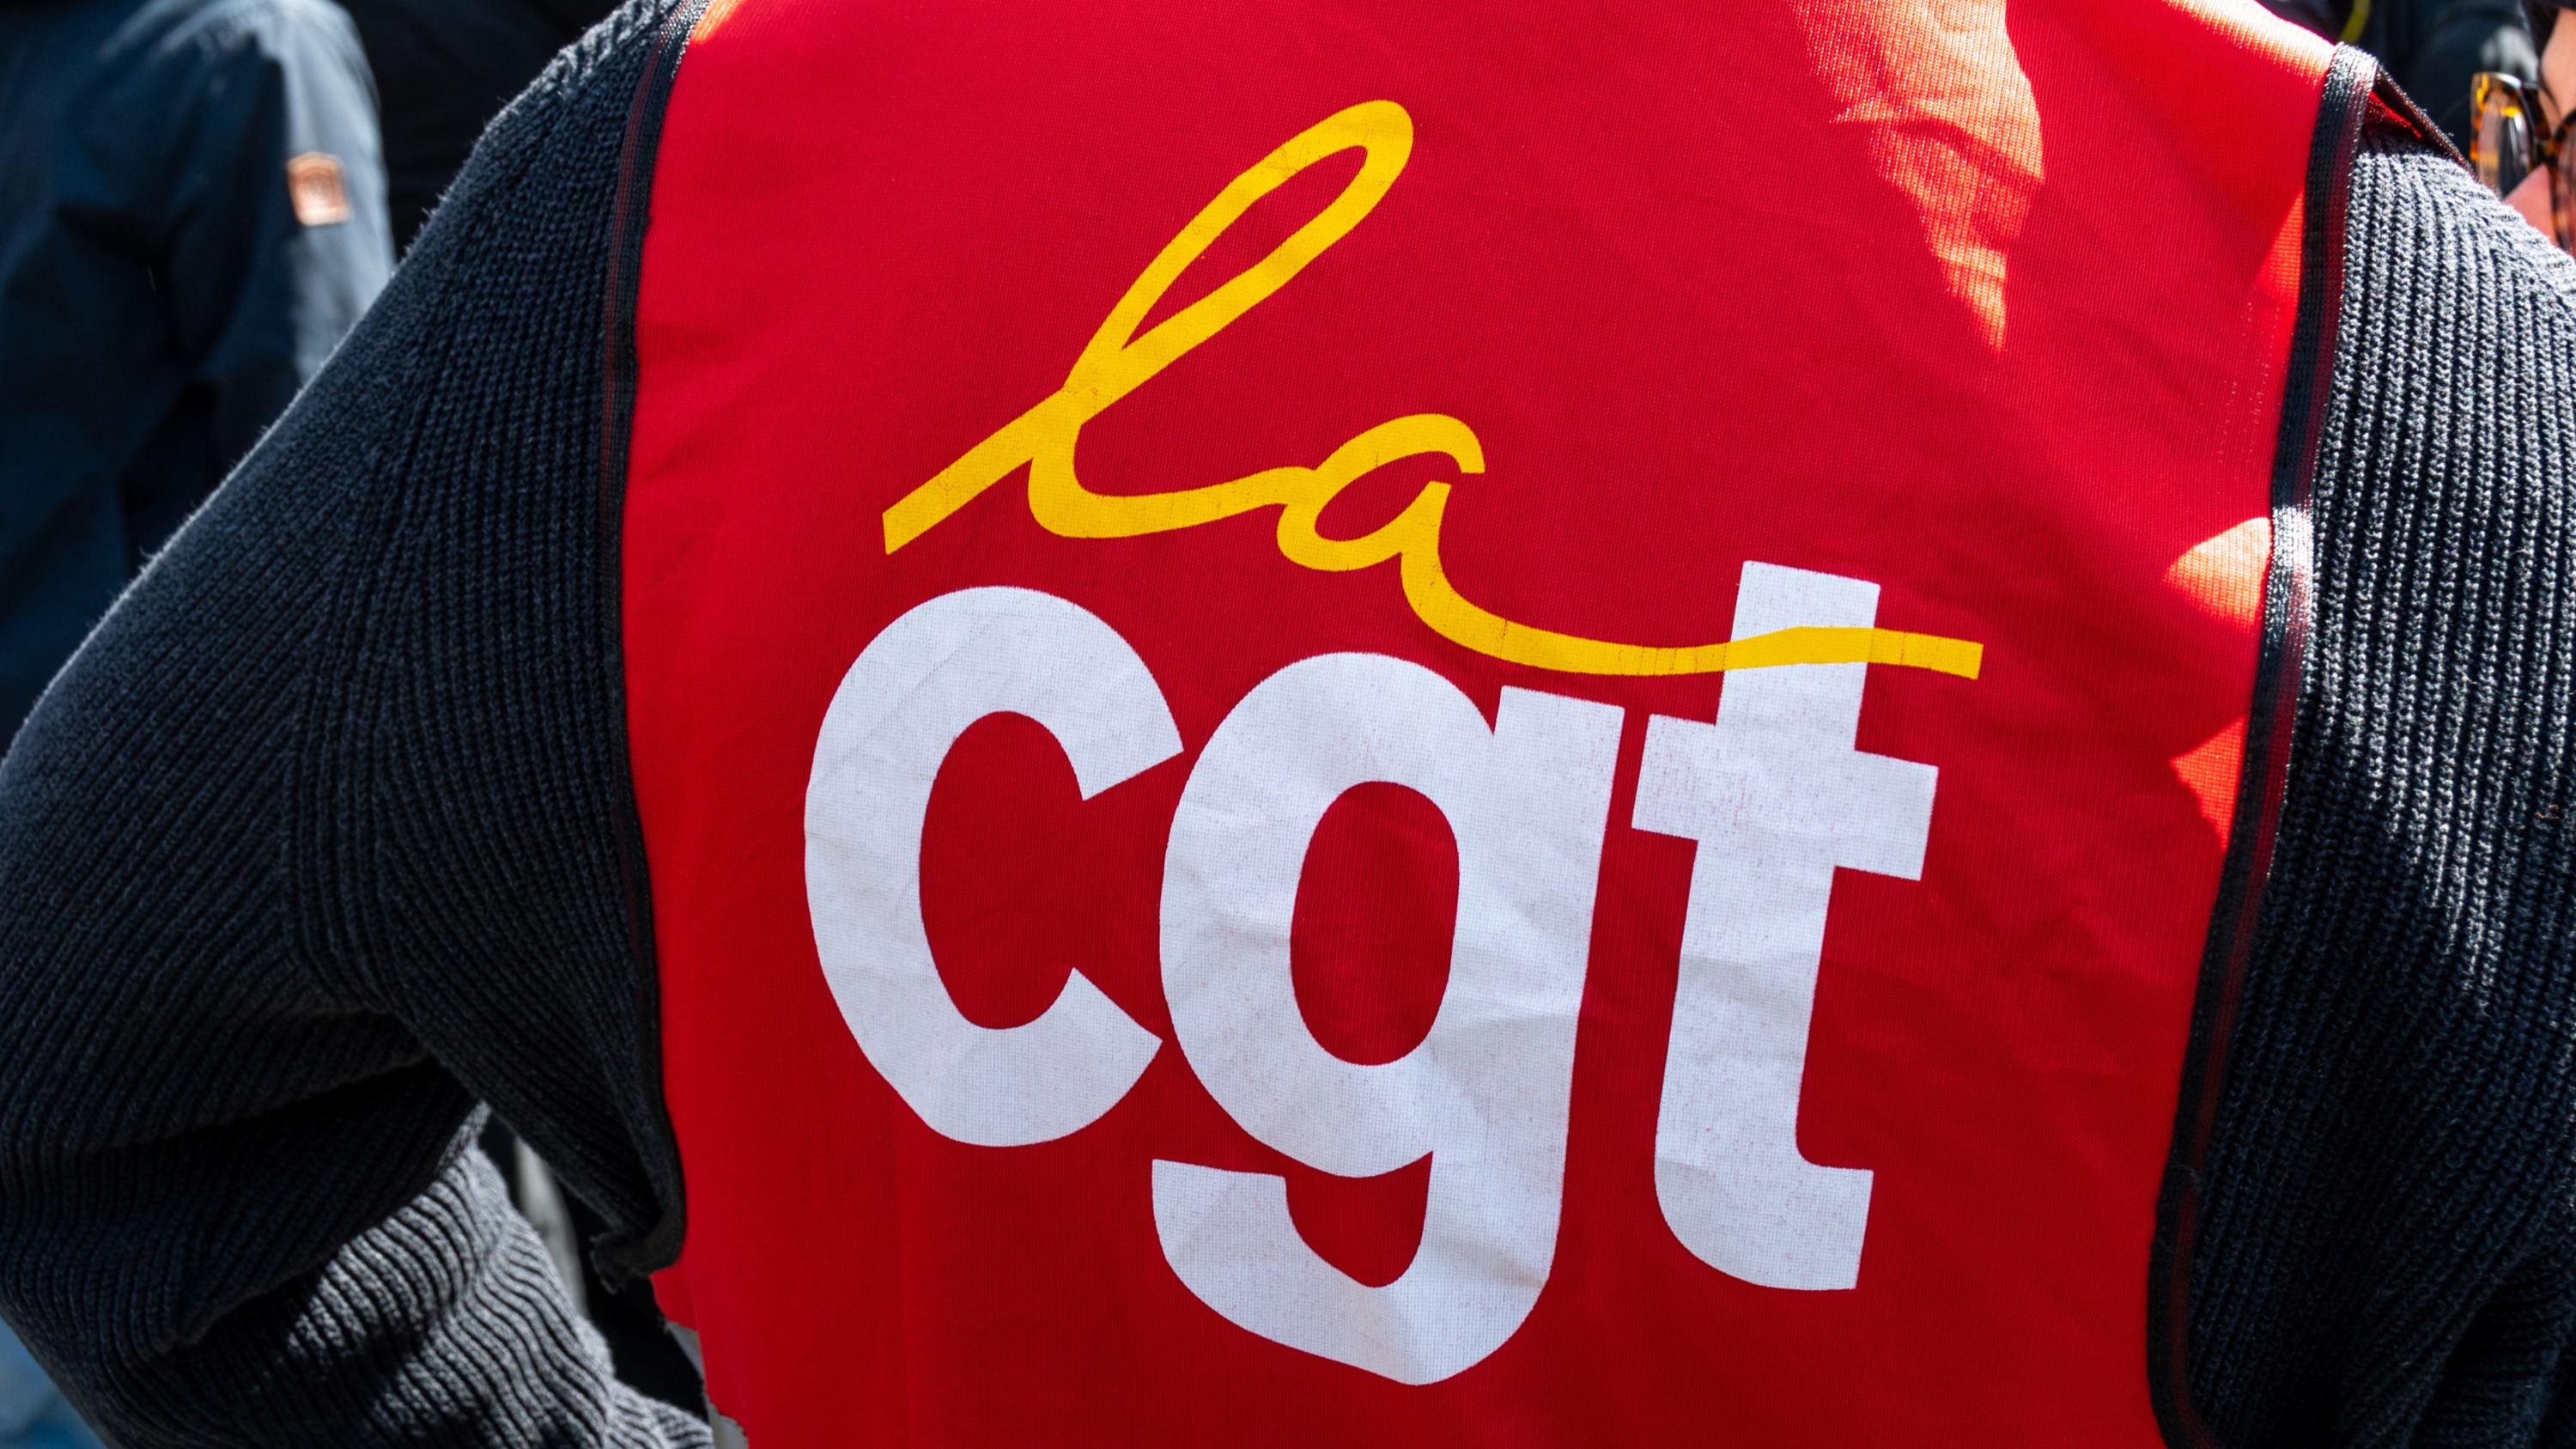 La CGT s’indigne contre les mesures farfelues du maire de Marignane, proche du RN